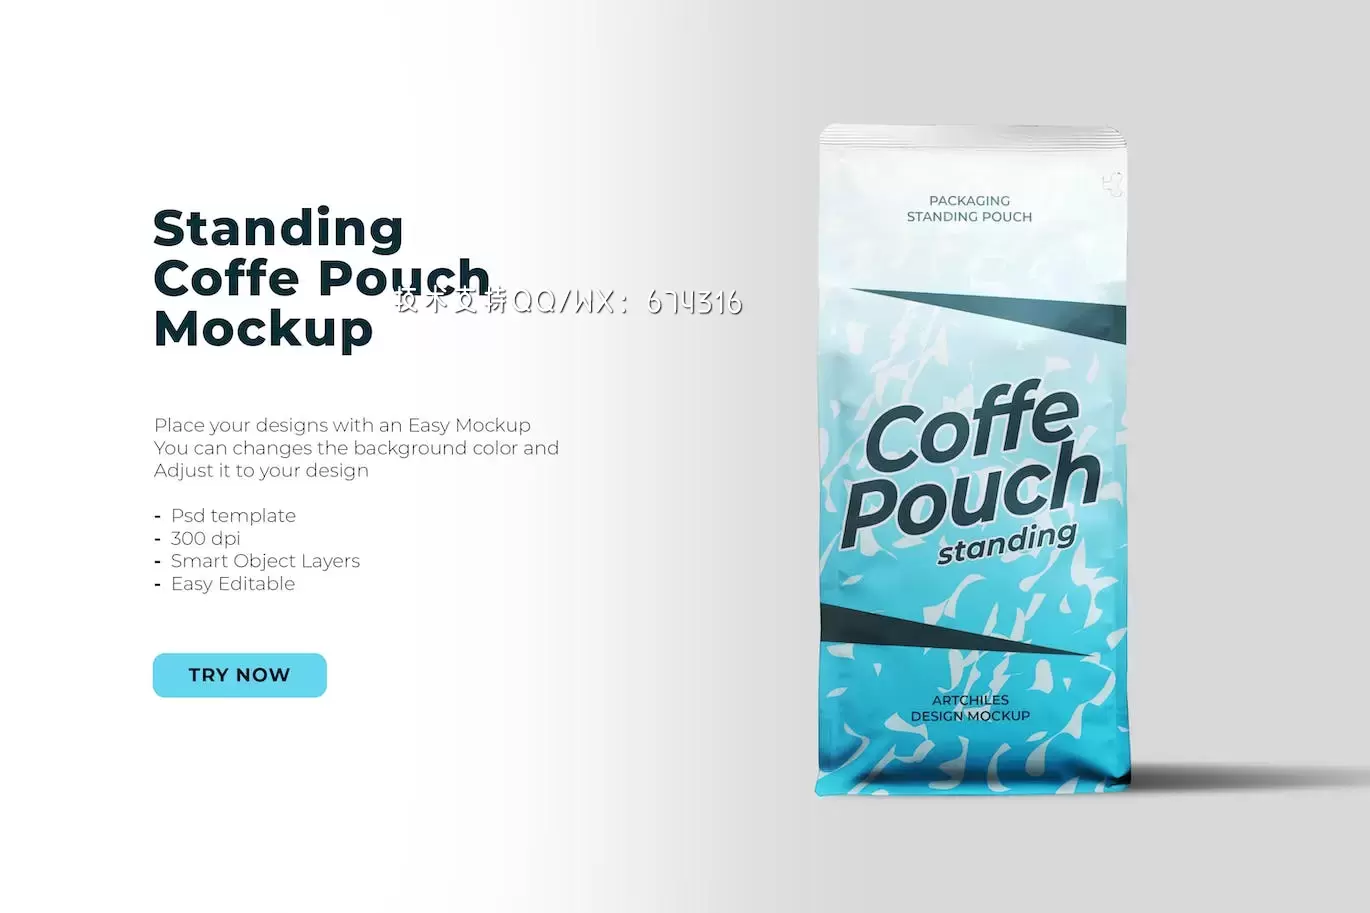 咖啡豆包装袋设计样机 (PSD,PNG,PDF)免费下载